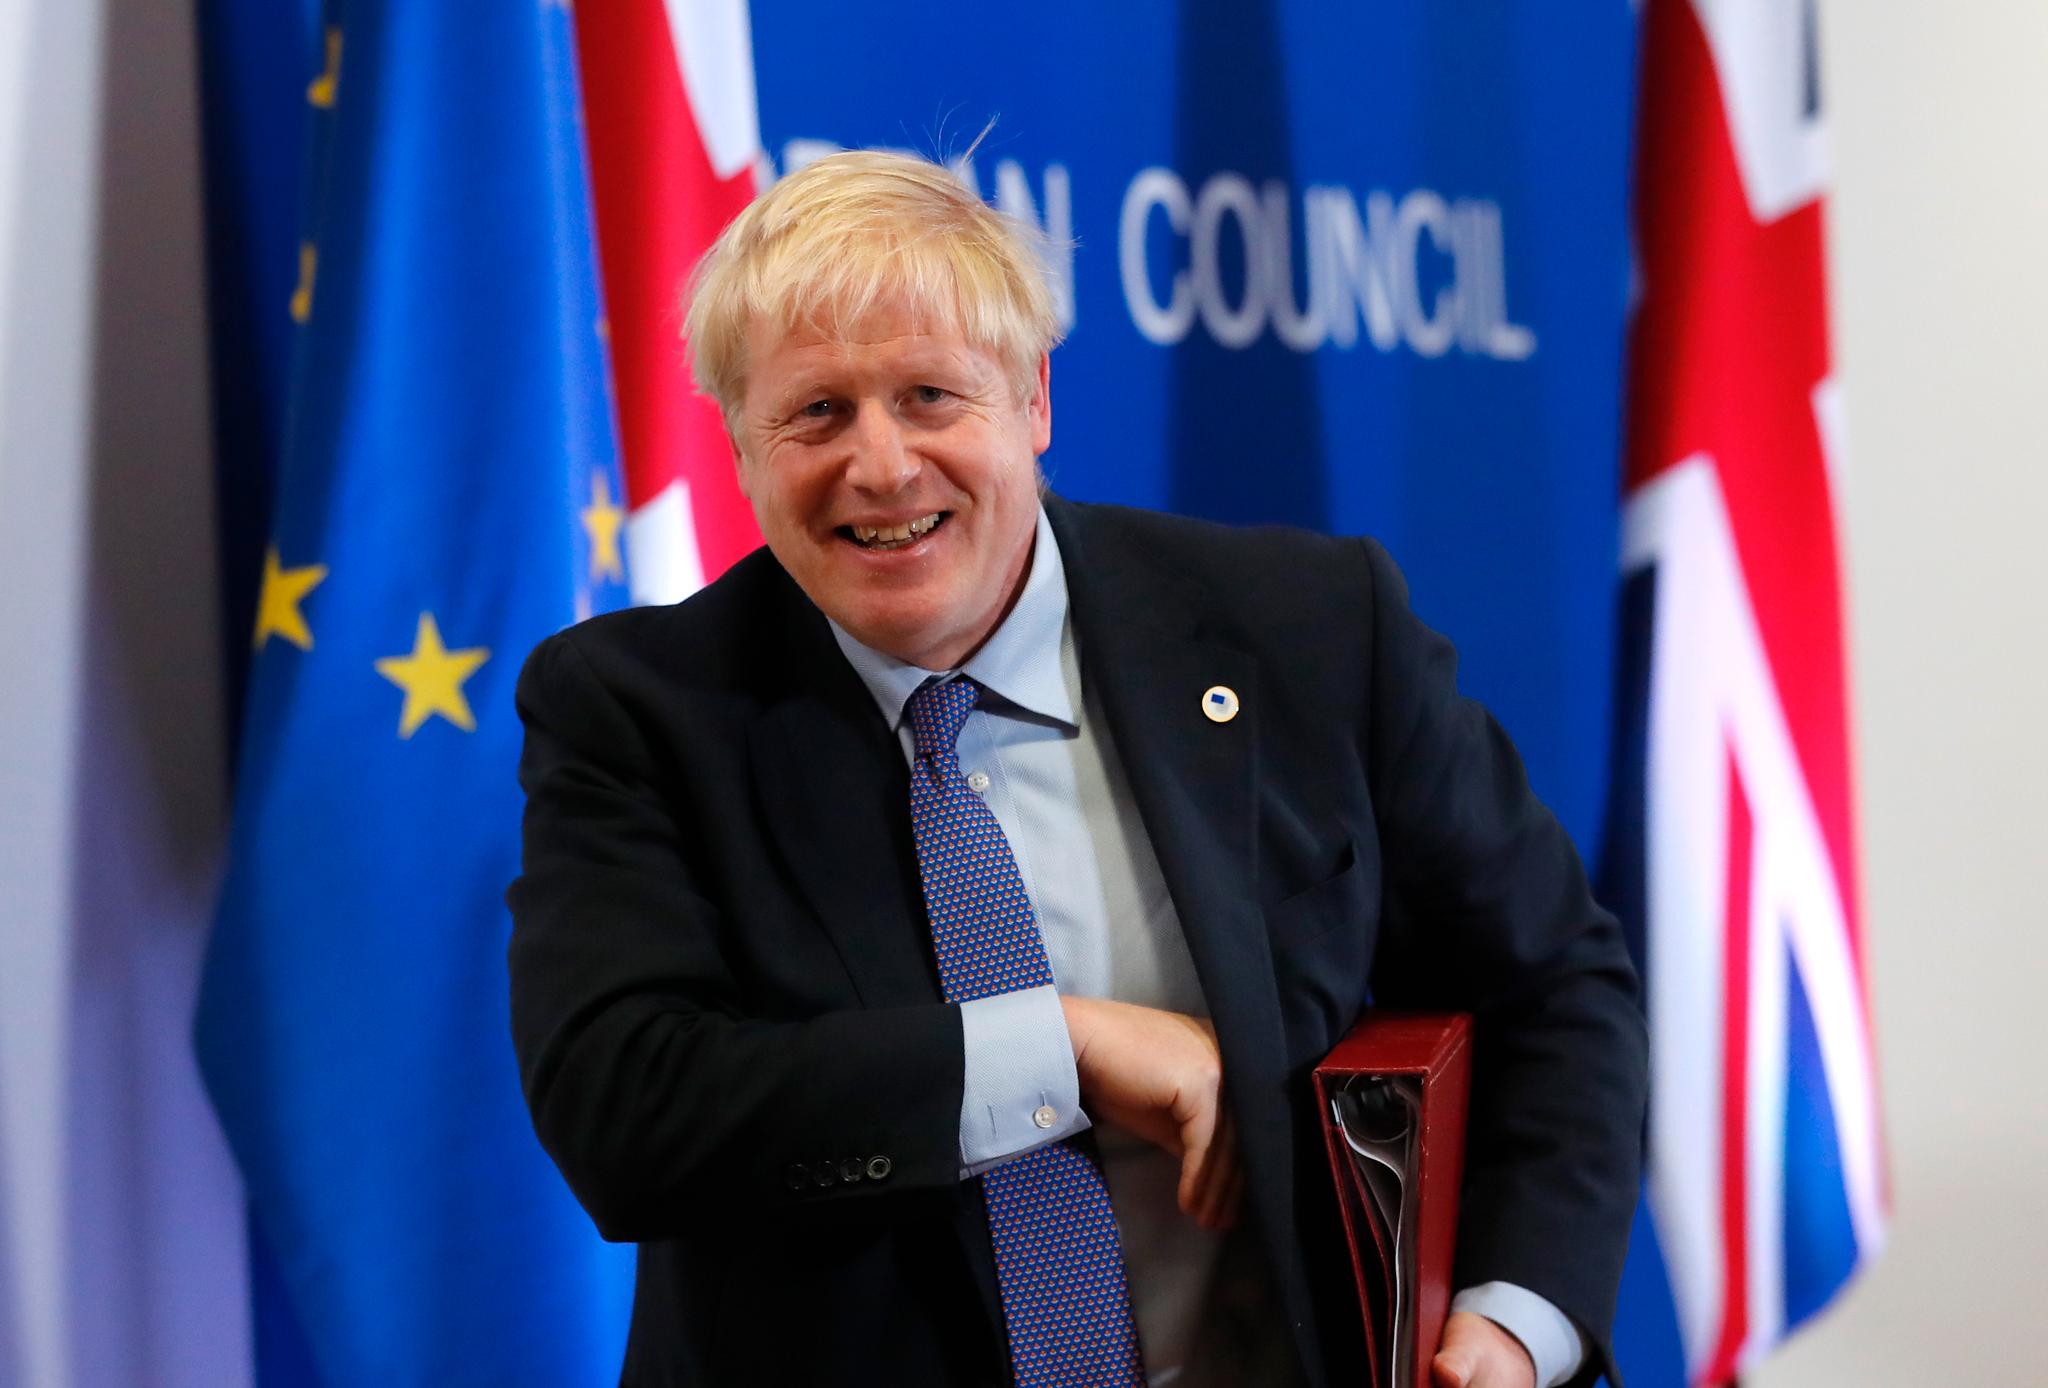 Torsdag kunne Boris Johnson smile fordi avtalen med EU var i boks. Lørdag ettermiddag får han svar på hva Parlamentet sier til avtalen. Han trenger 320 stemmer i Underhuset før avtalen kan godkjennes.